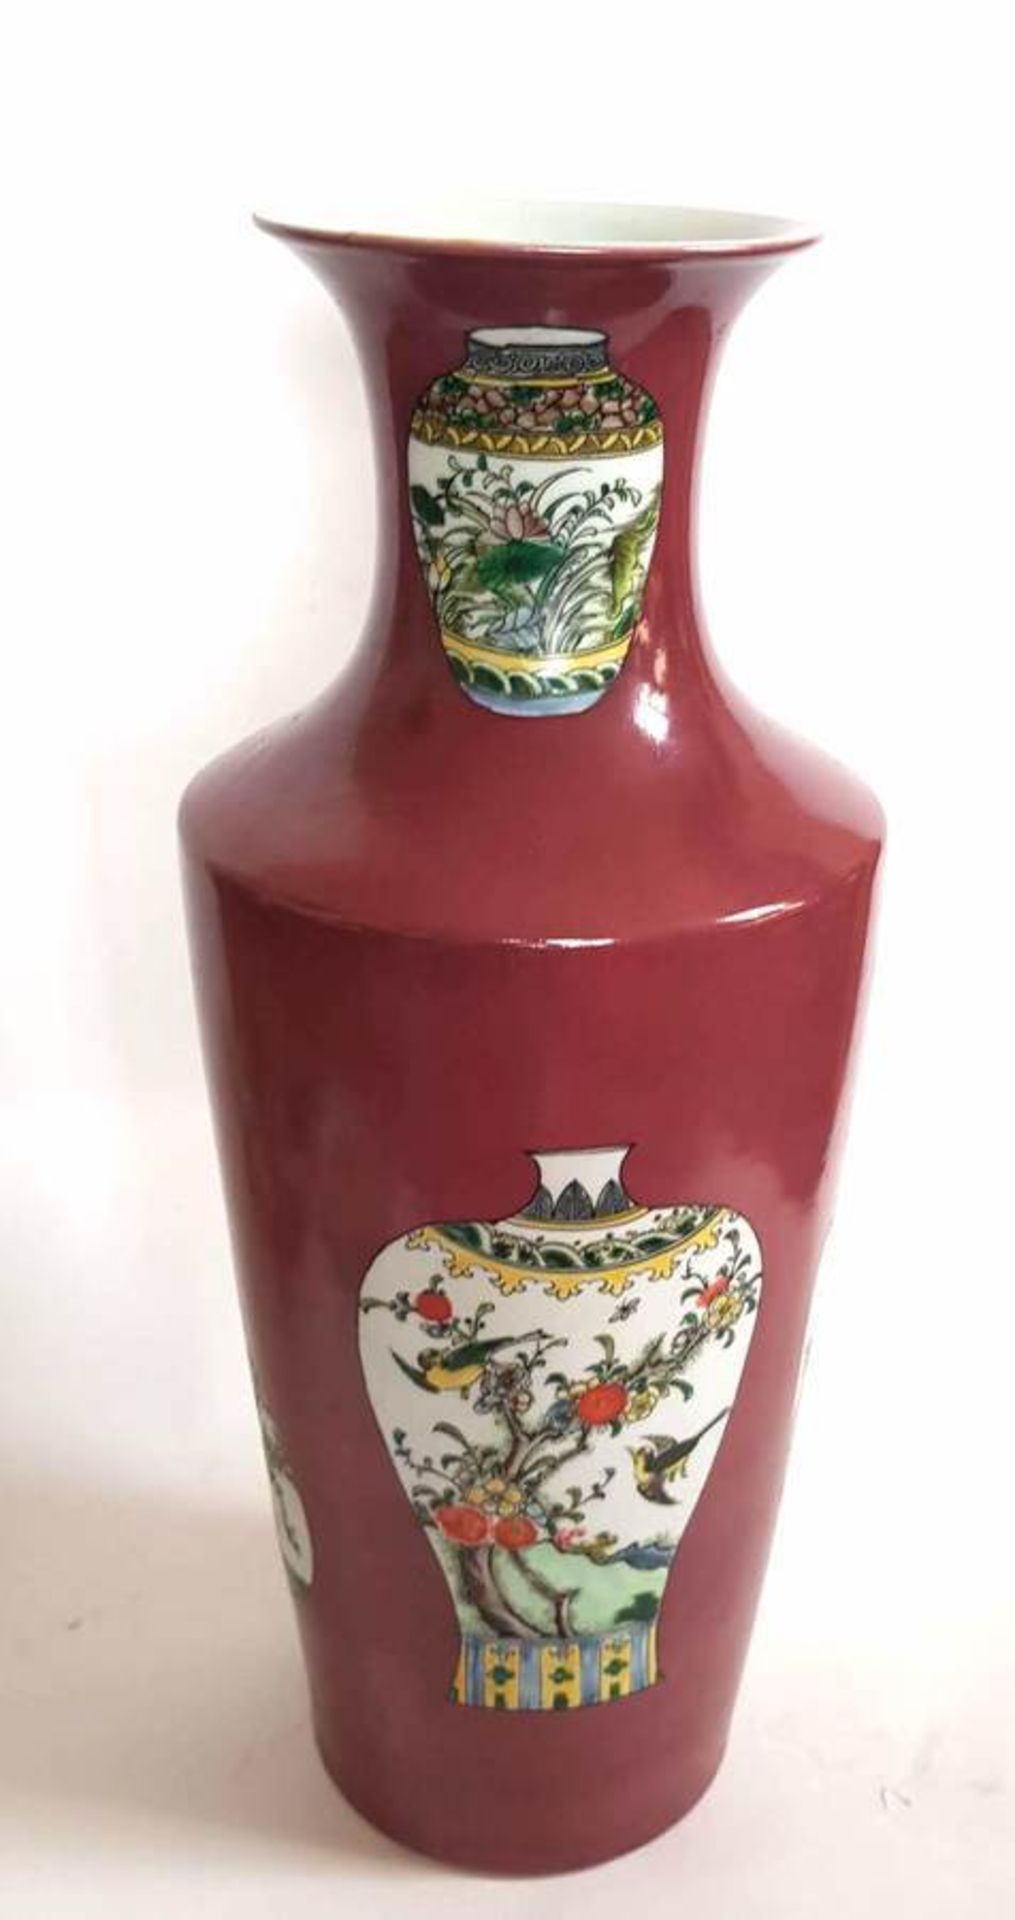 (Aziatica) Porselein vaas China eind 20e eeuwVaas met bordeaux rood fond met decoratie van vazen. - Bild 2 aus 7